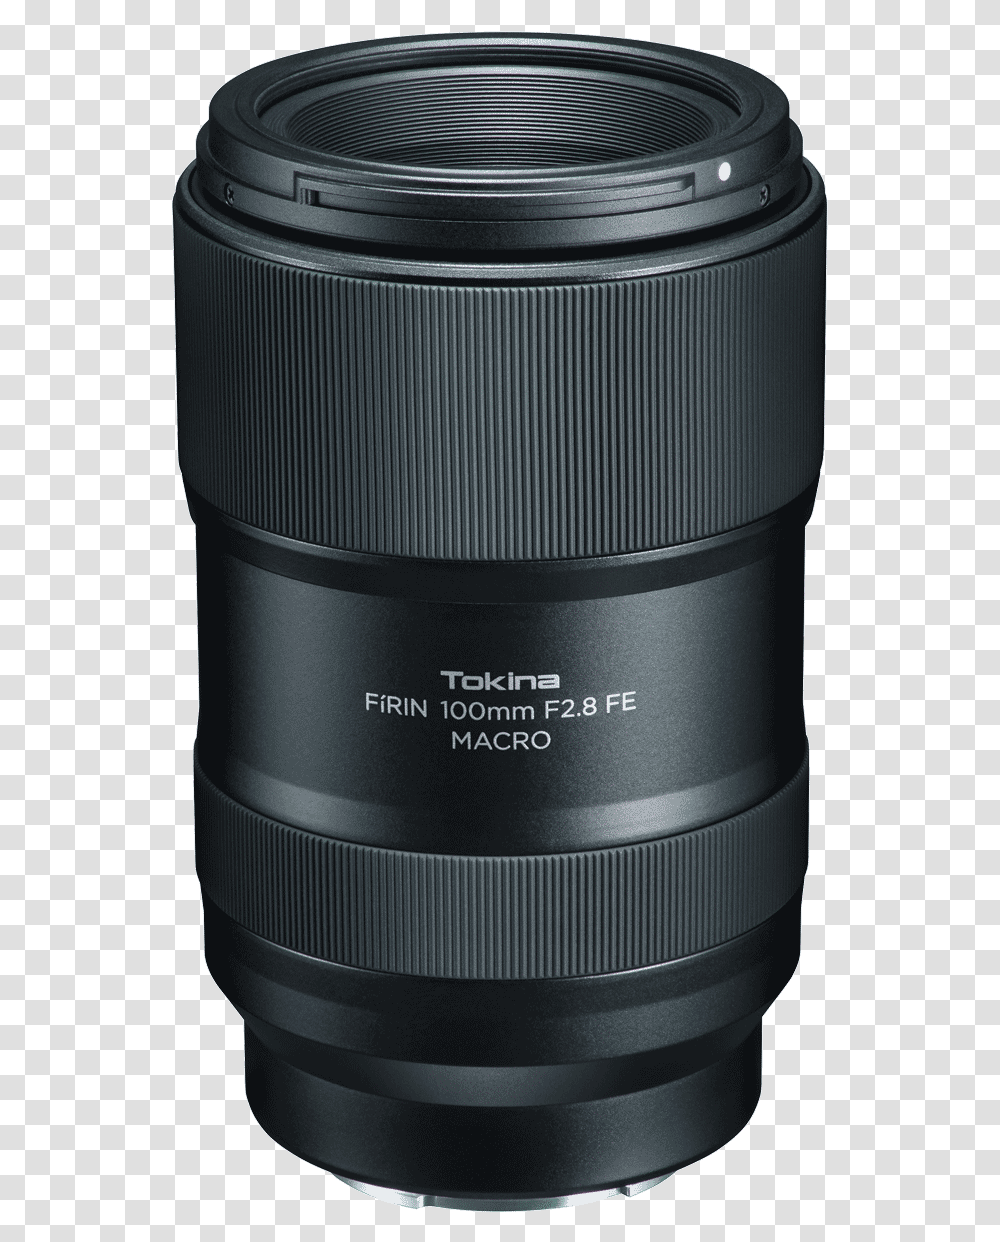 Tokina, Camera Lens, Electronics Transparent Png